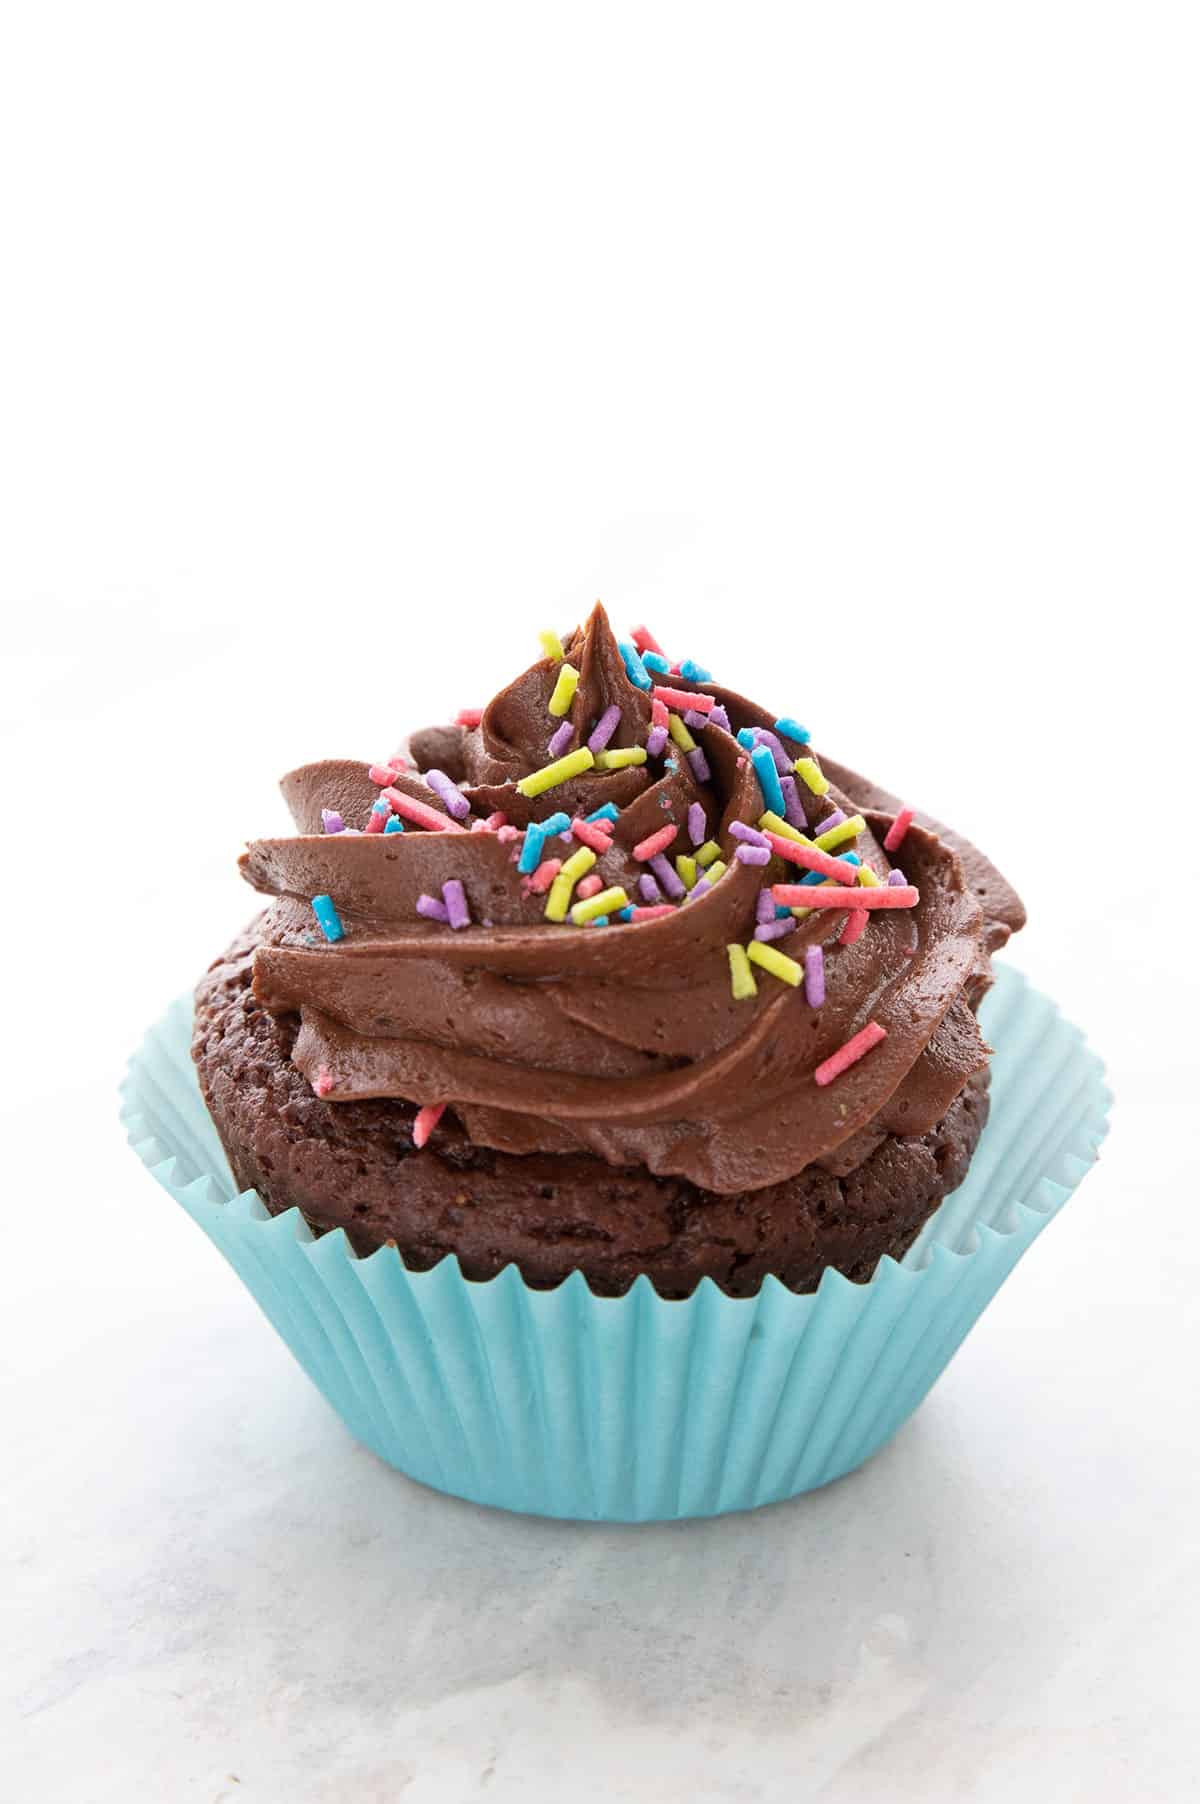 Kremet keto-sjokoladefrosting på en sjokoladecupcake i en blå cupcakeform. 